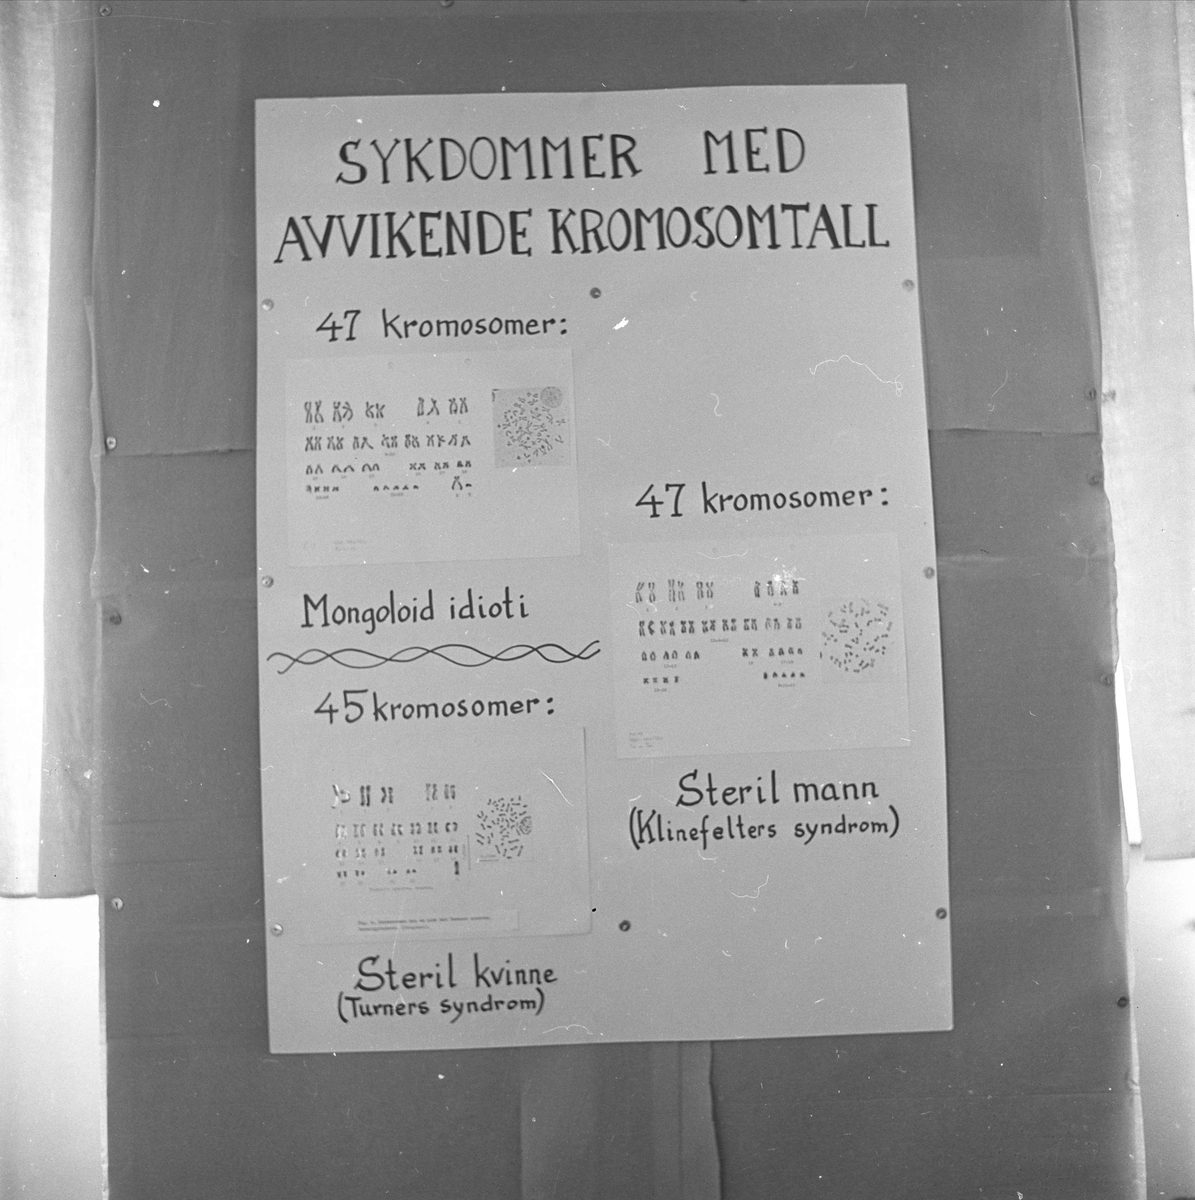 Oslo, juni 1960, Universitetets utstilling i anledning 150-årsjubileet.